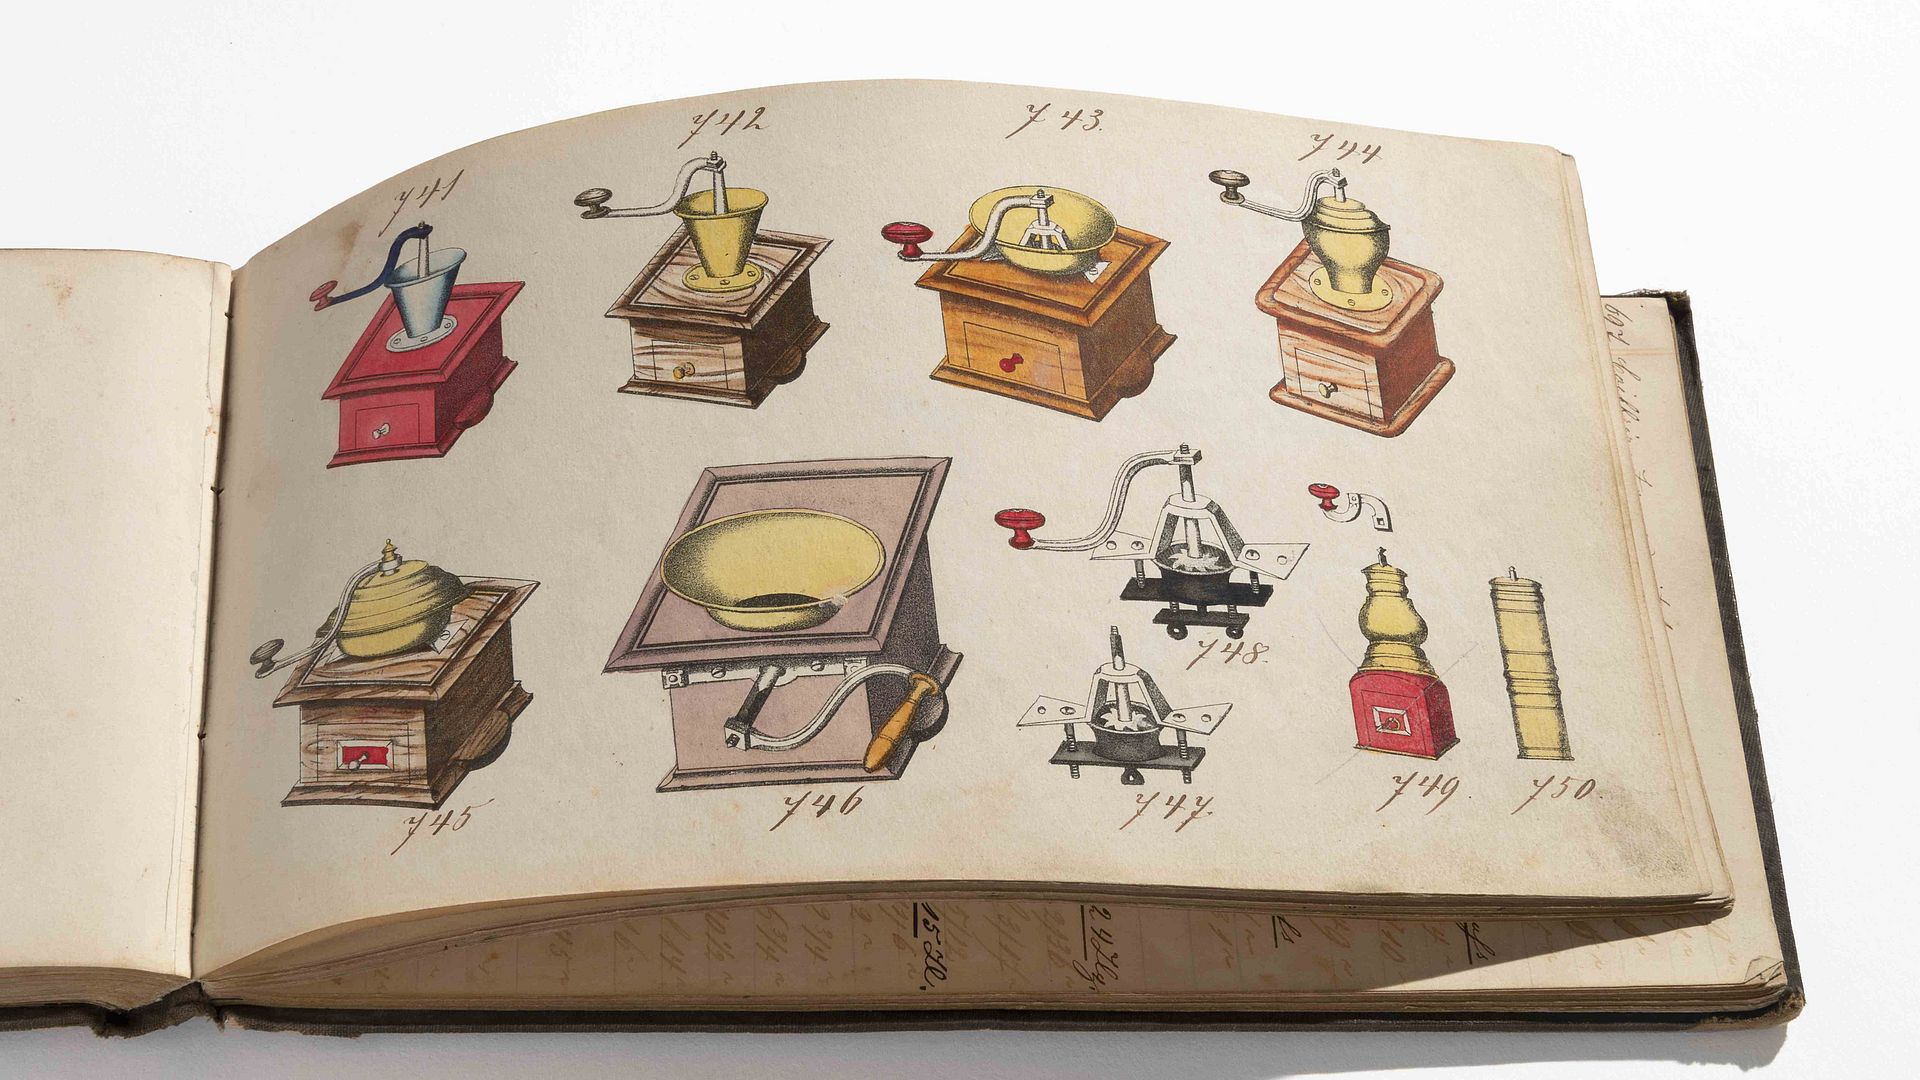 Musterbuch von Kissing & Möllmann mit verschiedenen Typen von Kaffeemühlen, 1855.